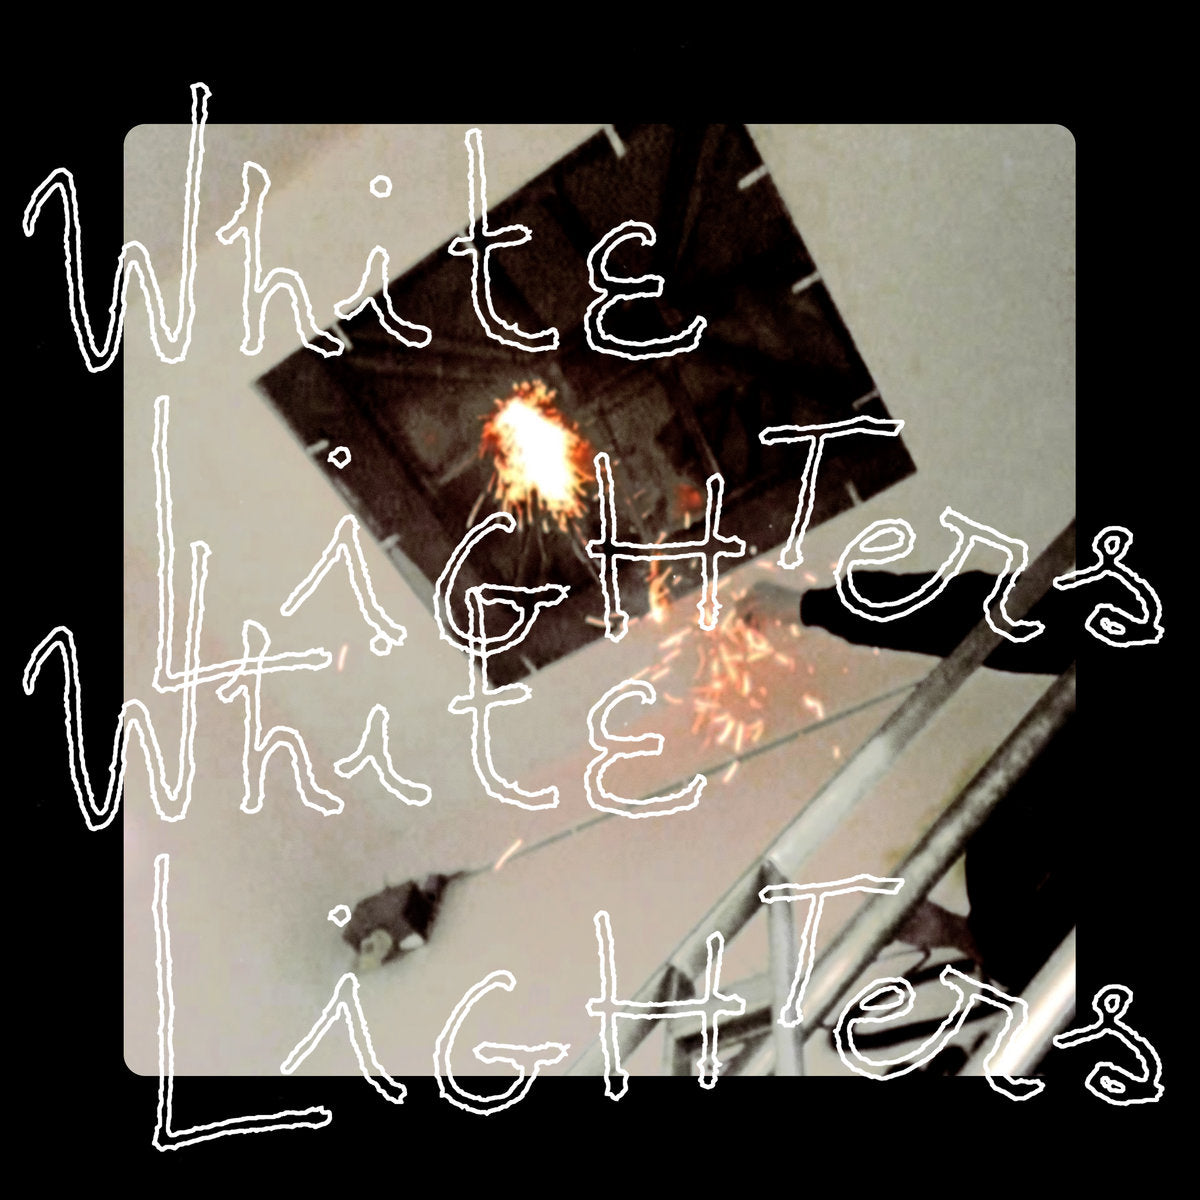 White Lighters "White Lighters" 12" Vinyl